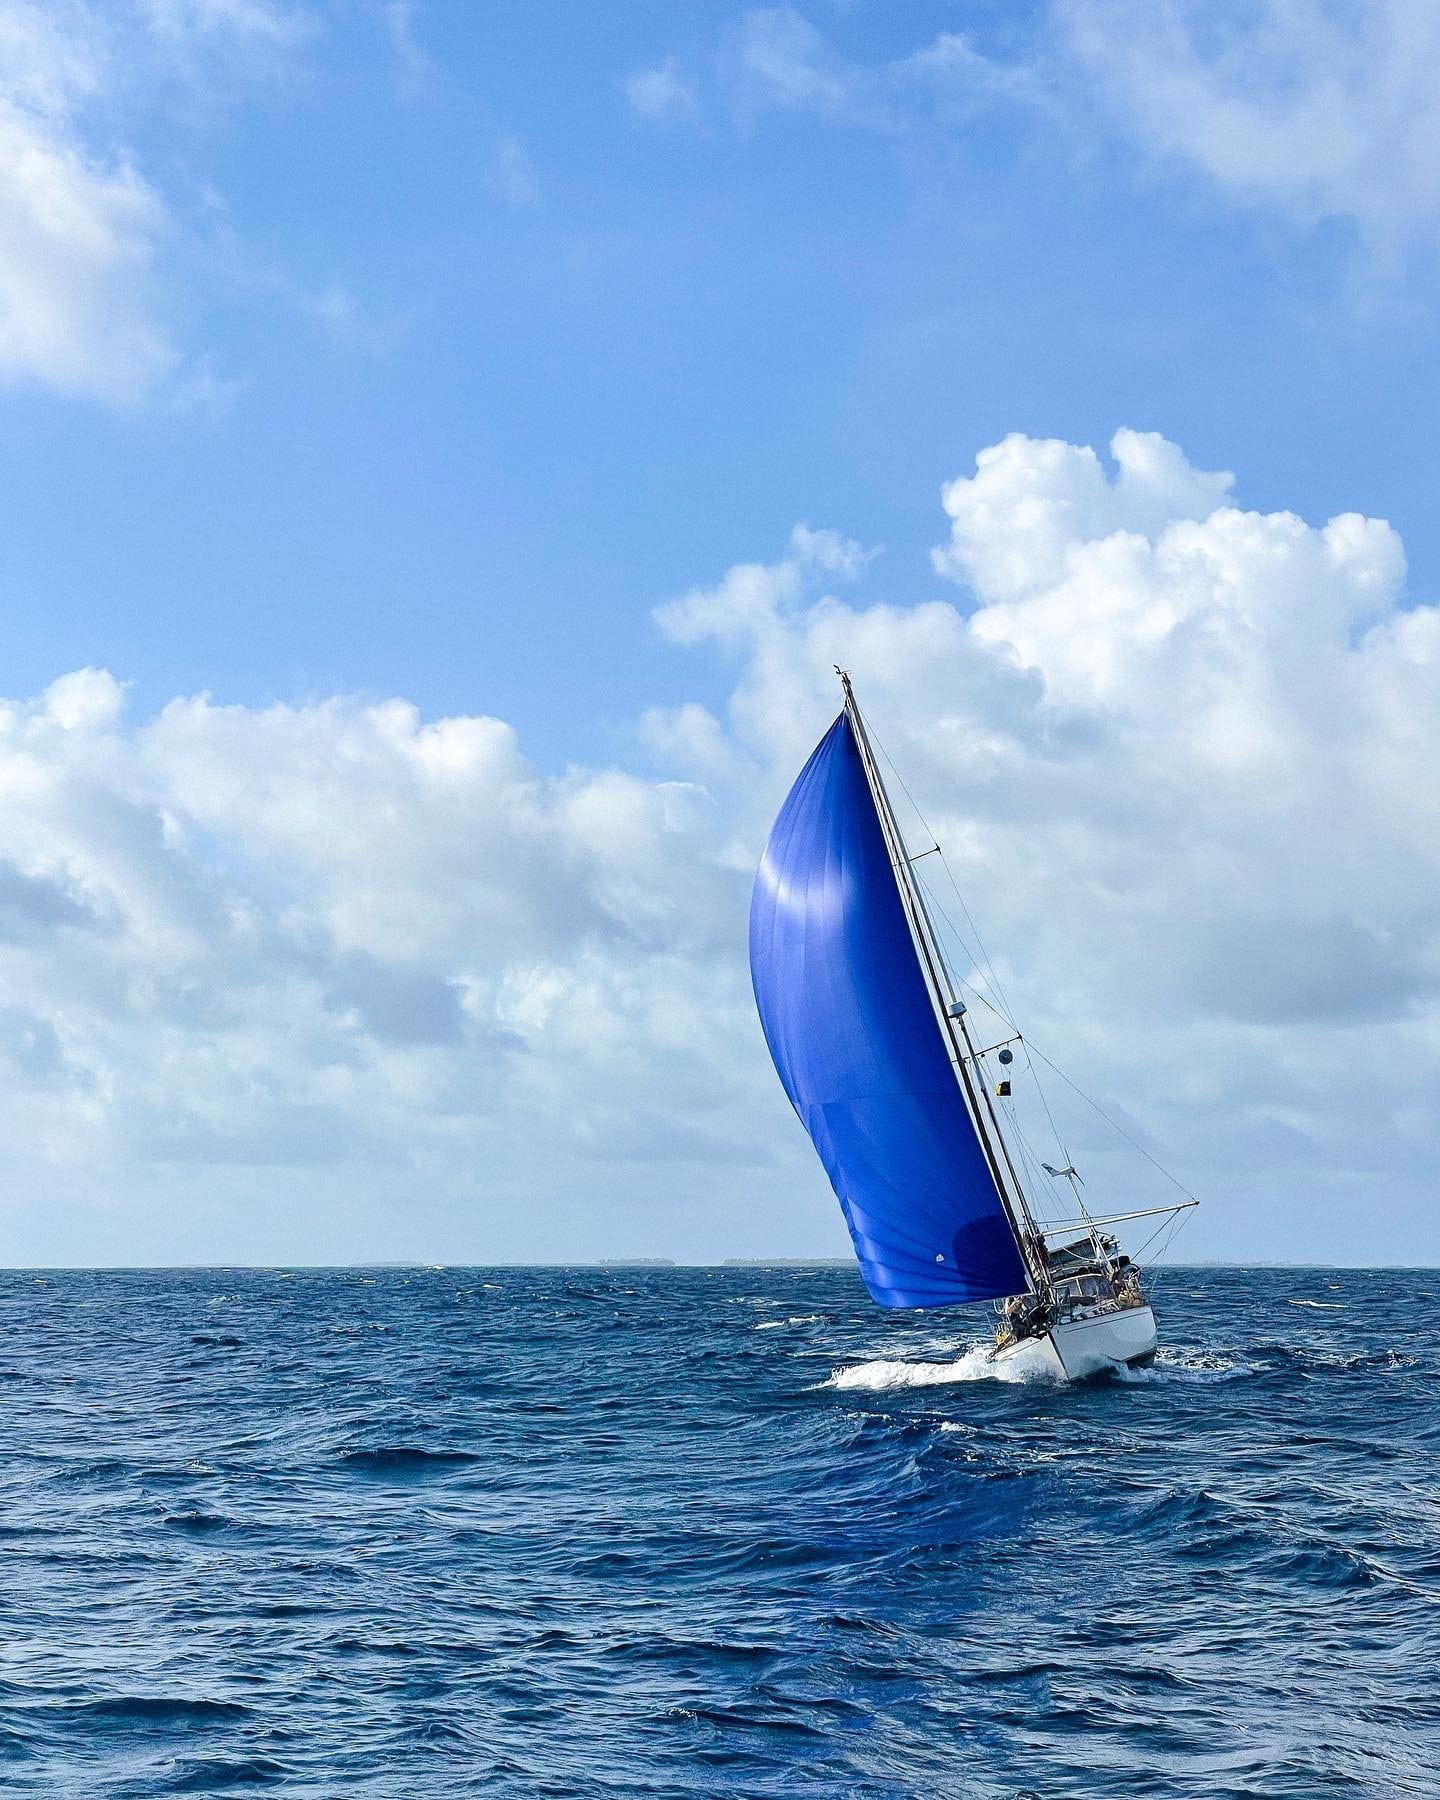 Calico Skies Sailboat in the Ocean Sailing